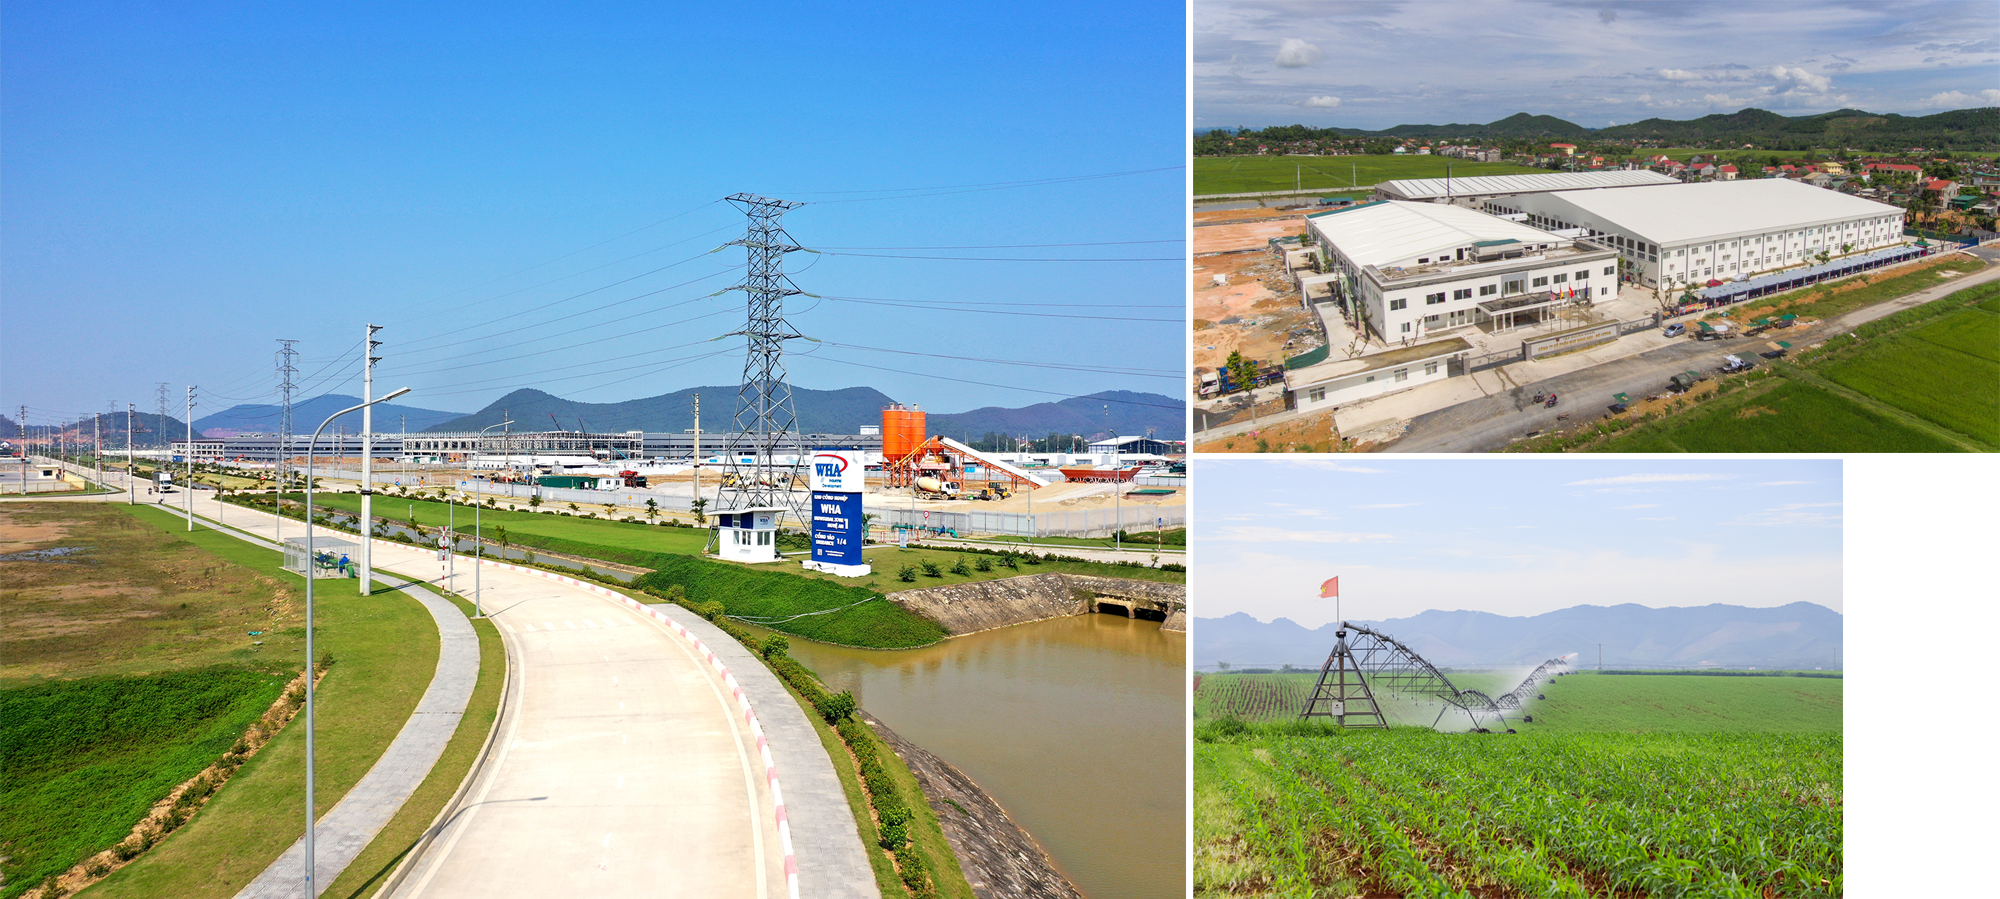 Khu công nghiệp WHA; Các khu công nghiệp nhỏ và vừa hình thành ở nhiều địa phương (Trong ảnh: Nhà máy may ở Đô Lương); Mô hình sản xuất nông nghiệp ứng dụng công nghệ cao của Tập đoàn TH ở Nghĩa Đàn. Ảnh tư liệu: PV - CTV